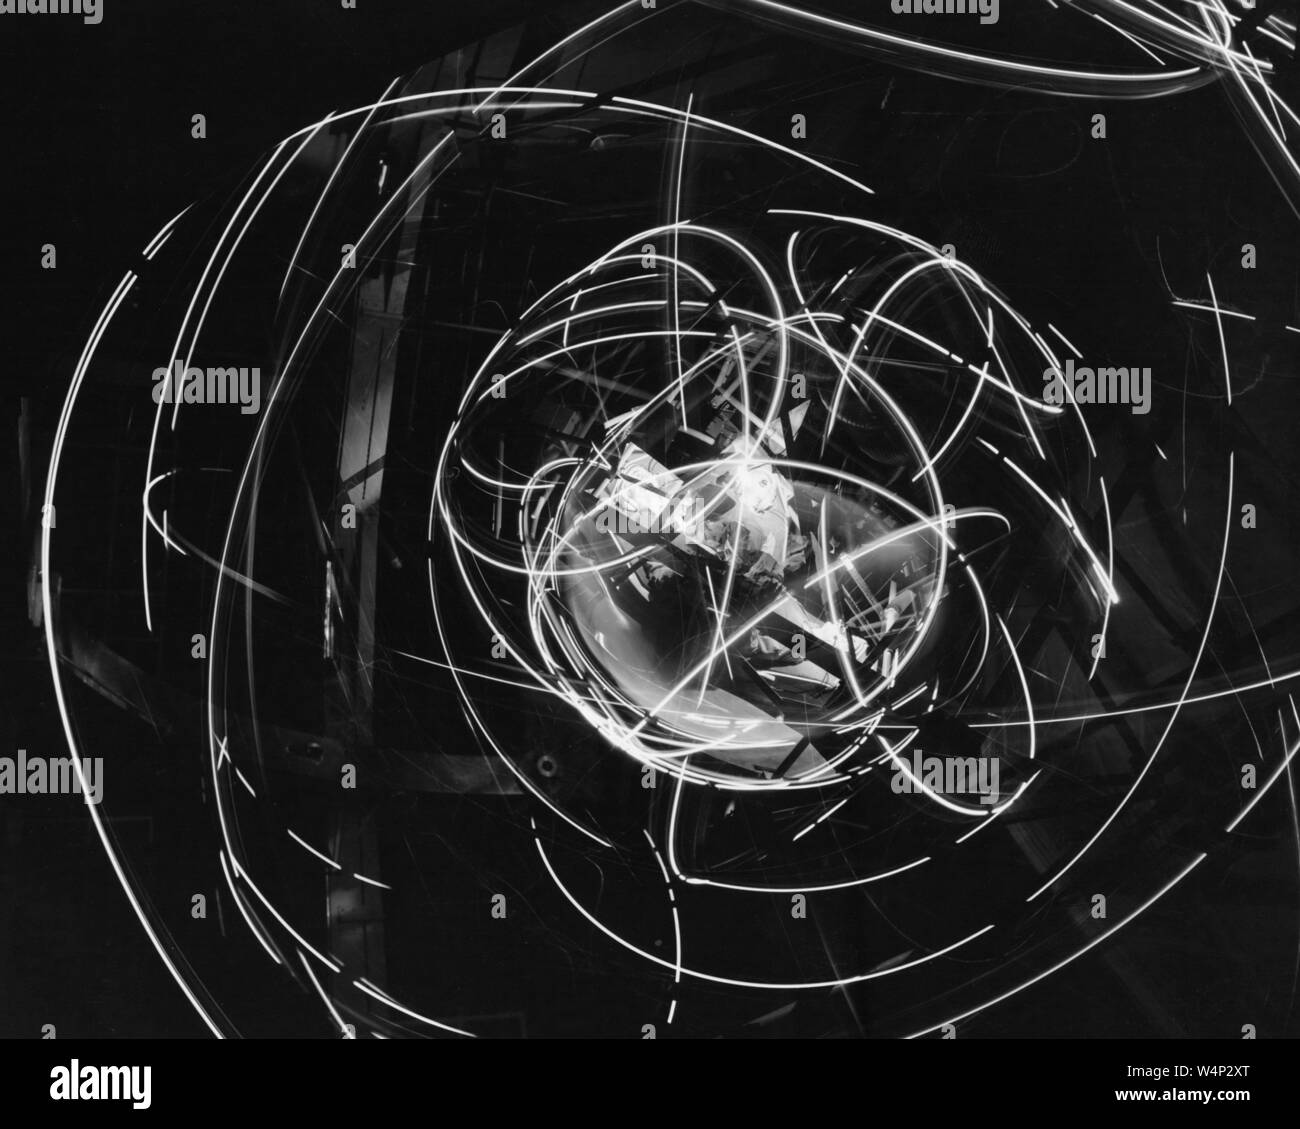 Più spazio asse inerzia Test Facility (MASTIF) in movimento, altitudine Wind Tunnel al Lewis Research Center, Cleveland, Ohio, Dicembre 16, 1959. Immagine cortesia Nazionale Aeronautica e Spaziale Administration (NASA). () Foto Stock